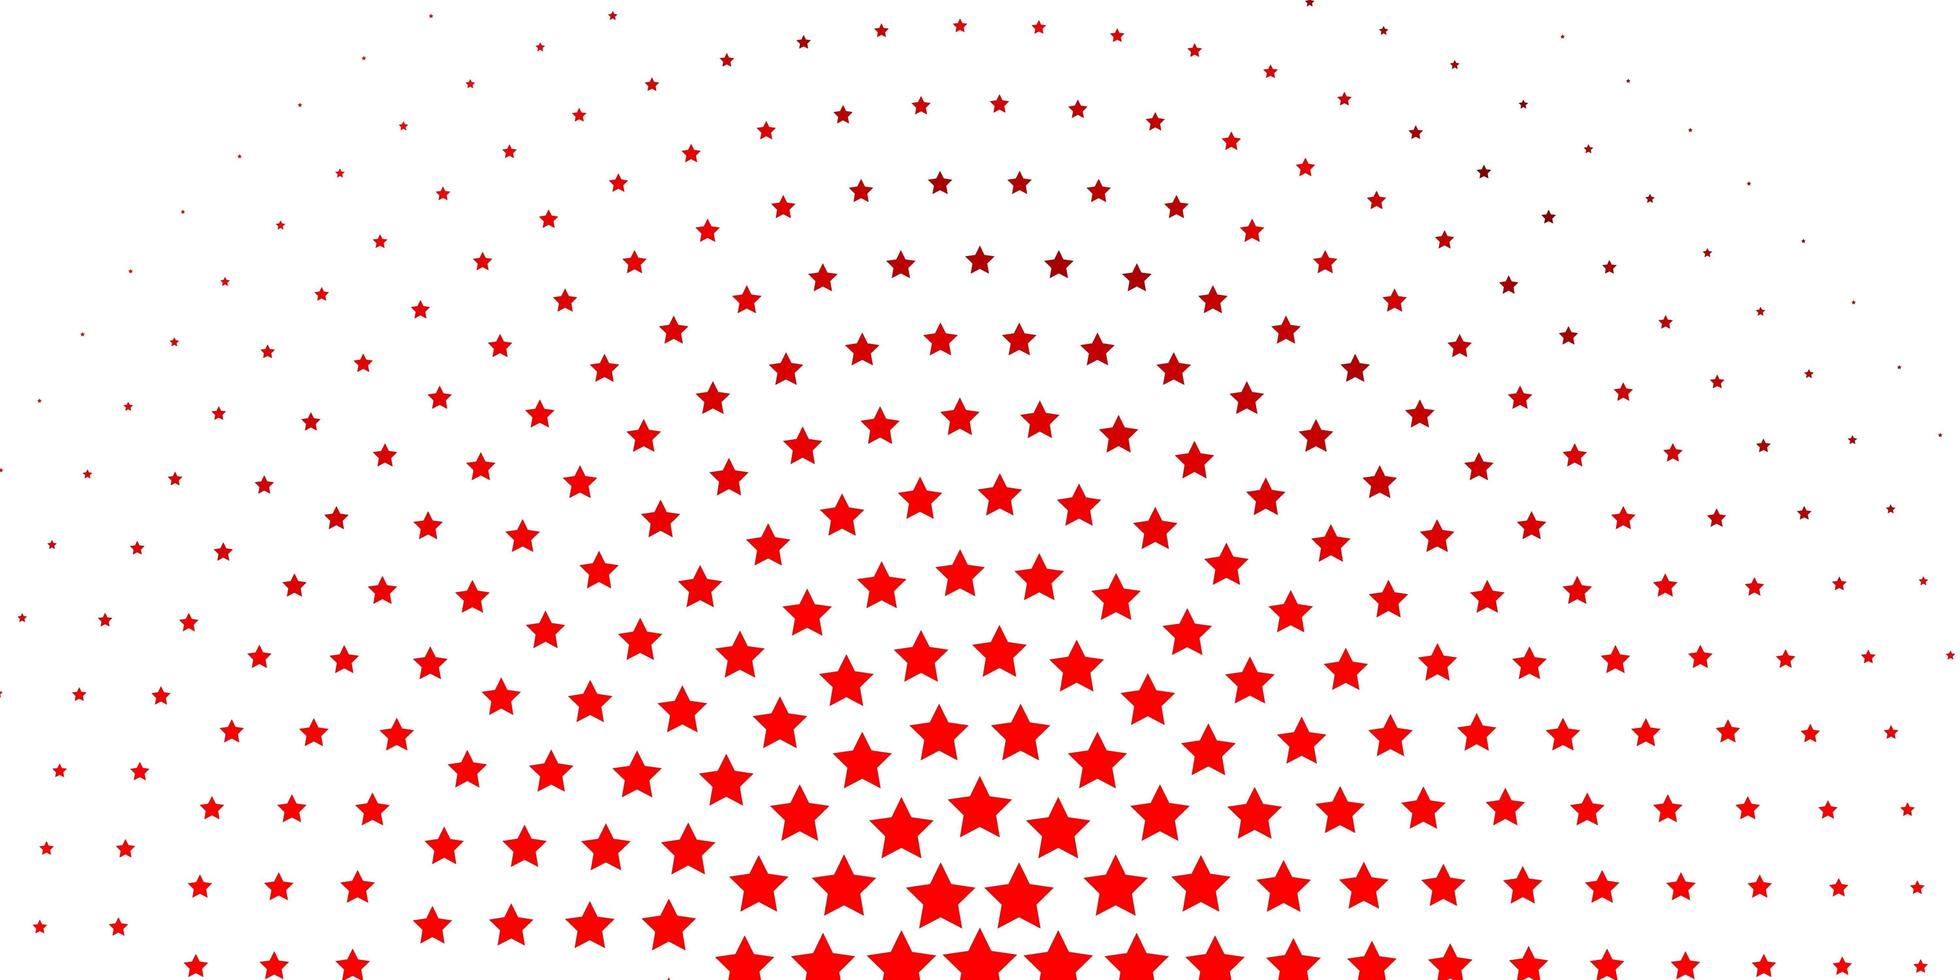 trama vettoriale giallo rosso chiaro con bellissime stelle illustrazione colorata con motivo a stelle sfumate astratte per incartare regali